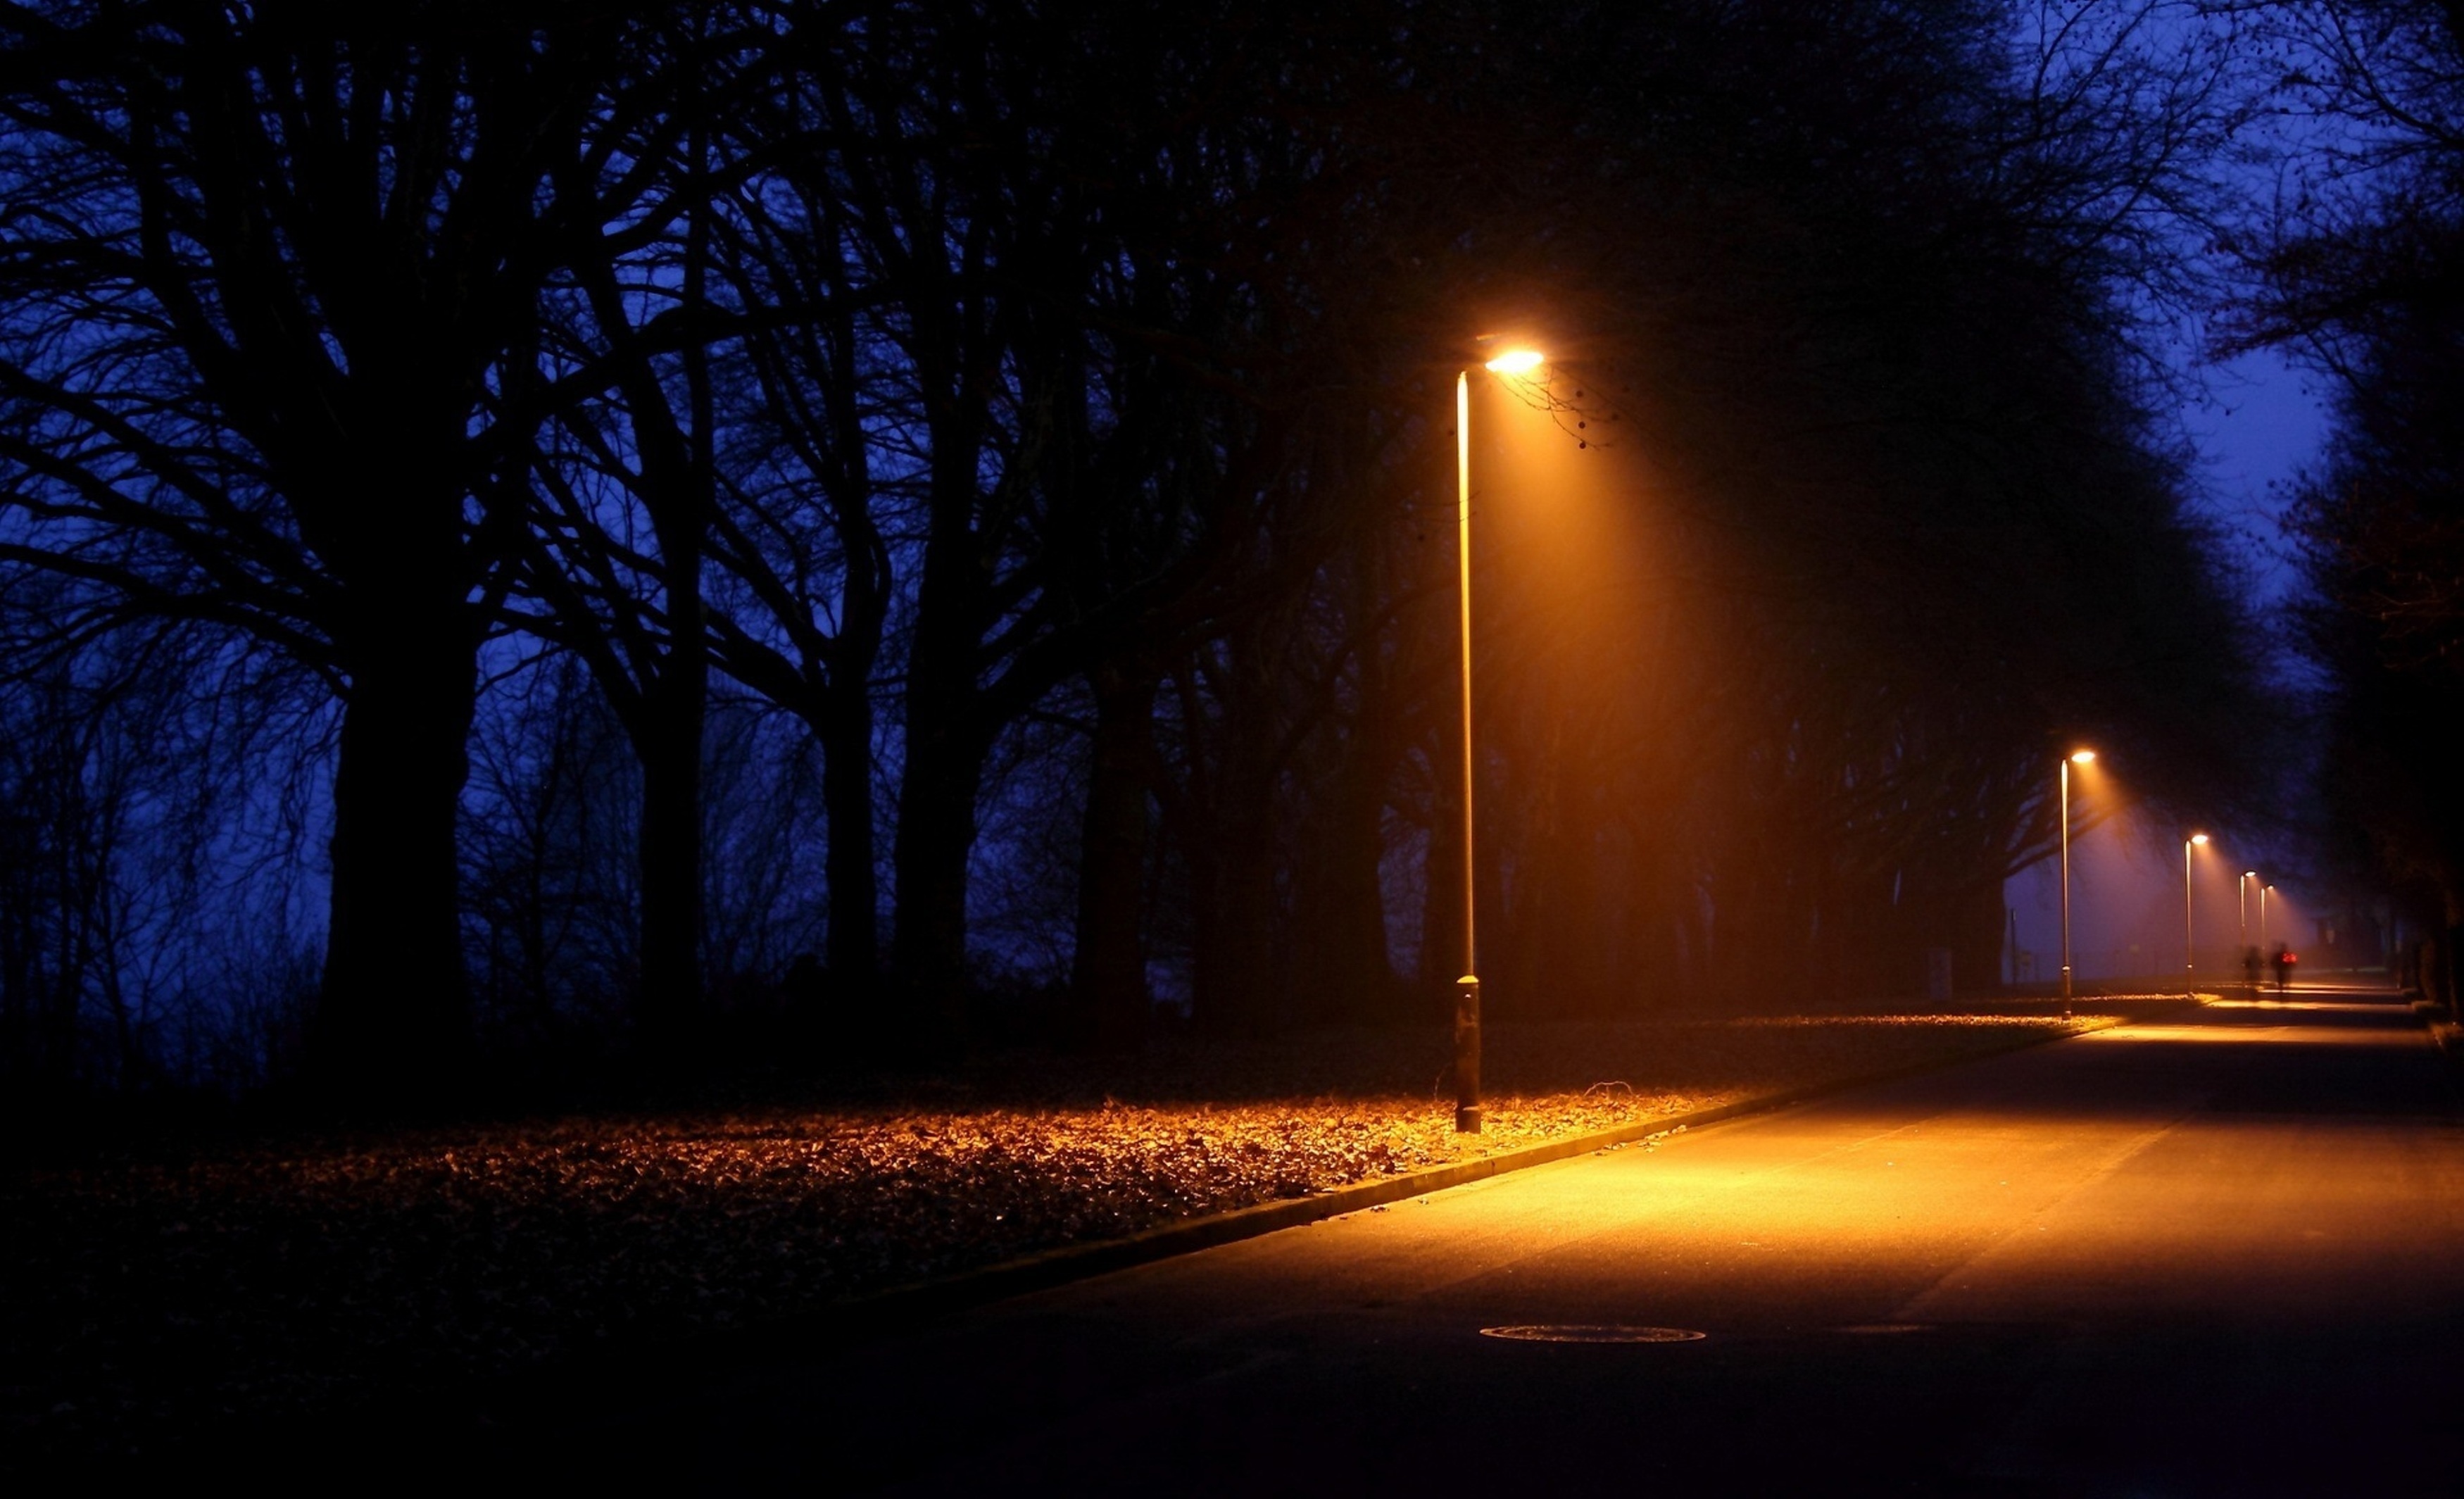 Вечер свет фонаря. Ночная улица с фонарями. Фонарь ночью. Ночные фонари. Ночной парк с фонарями.